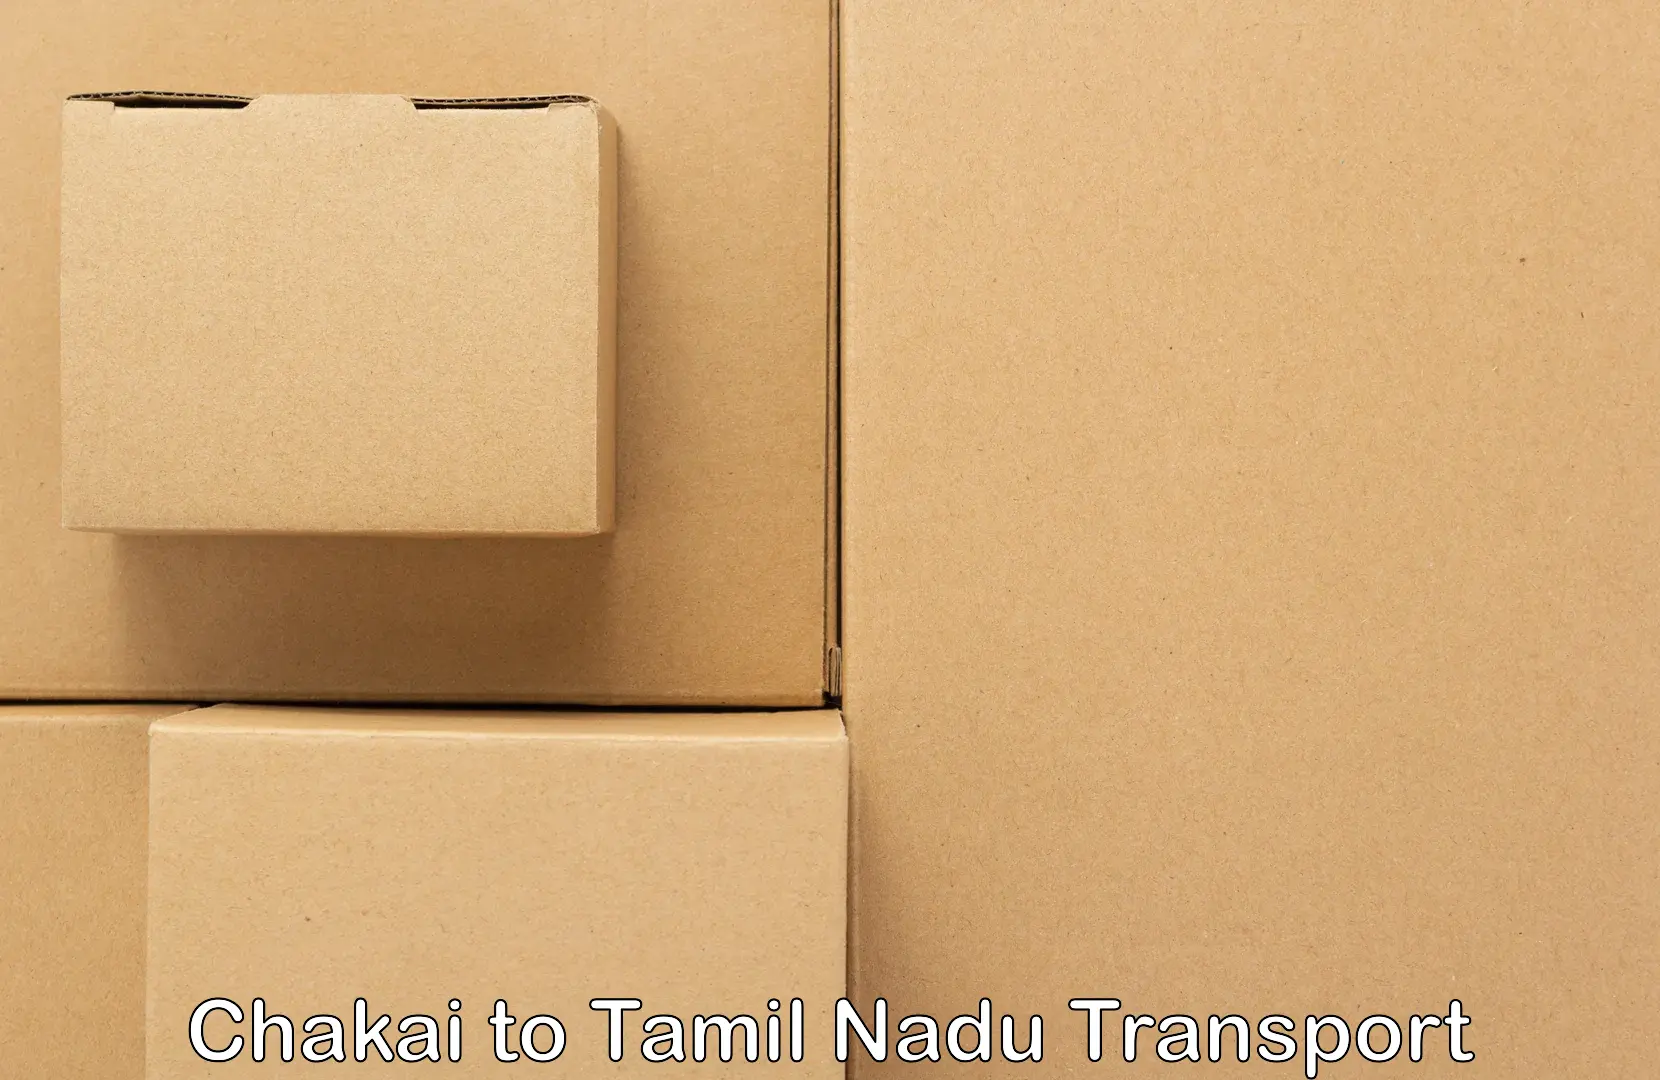 Pick up transport service Chakai to Vickramasingapuram